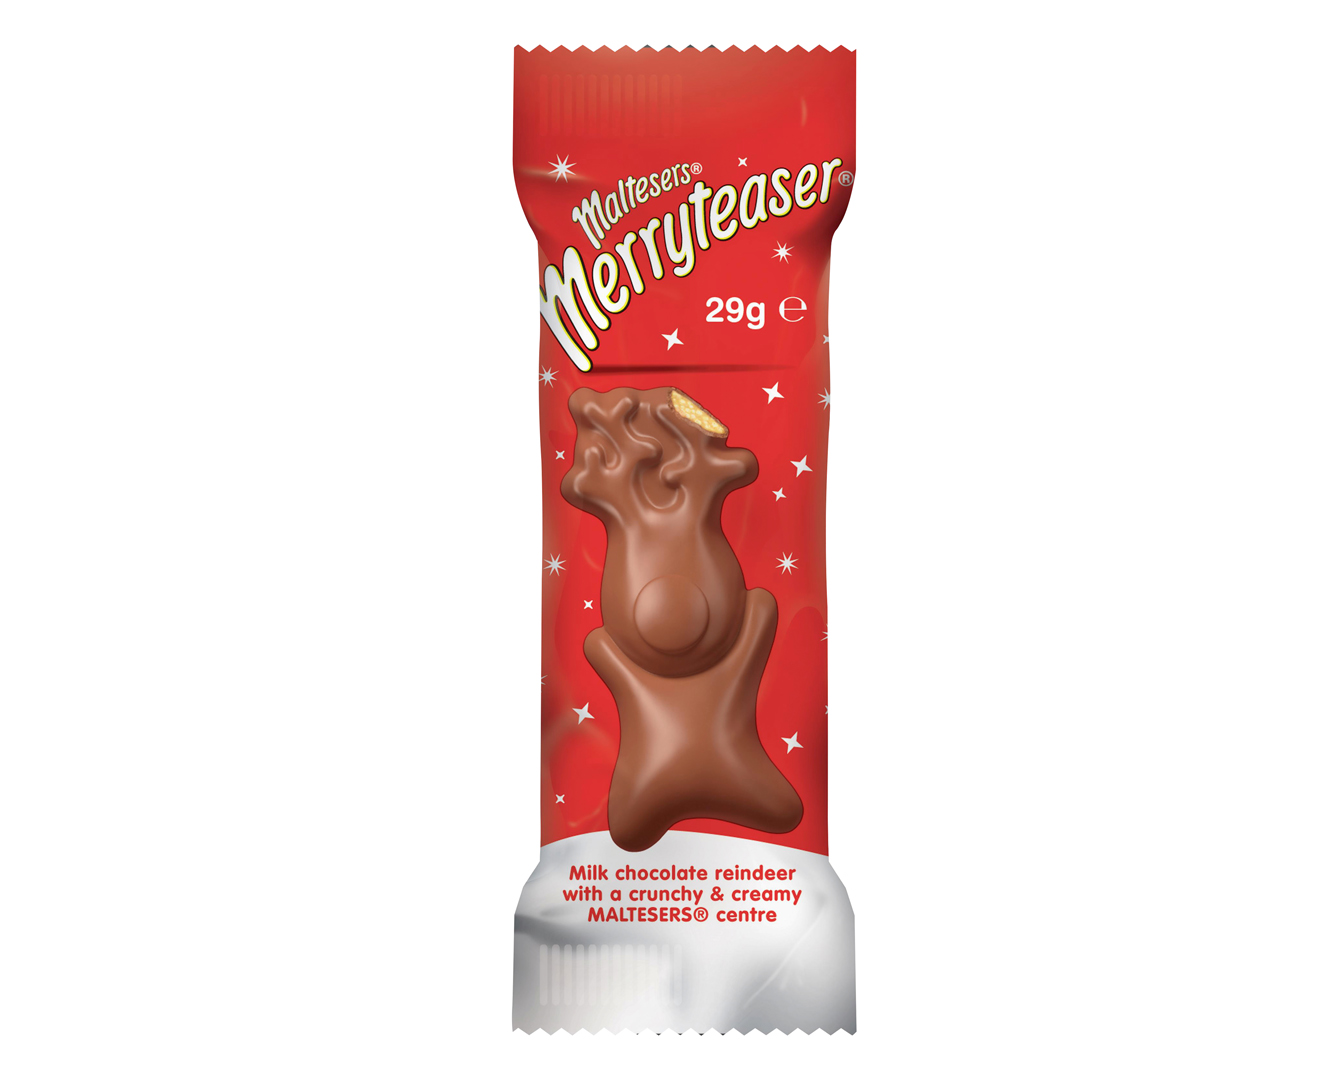 32 x Maltesers Merryteaser Chocolate Reindeer 29g